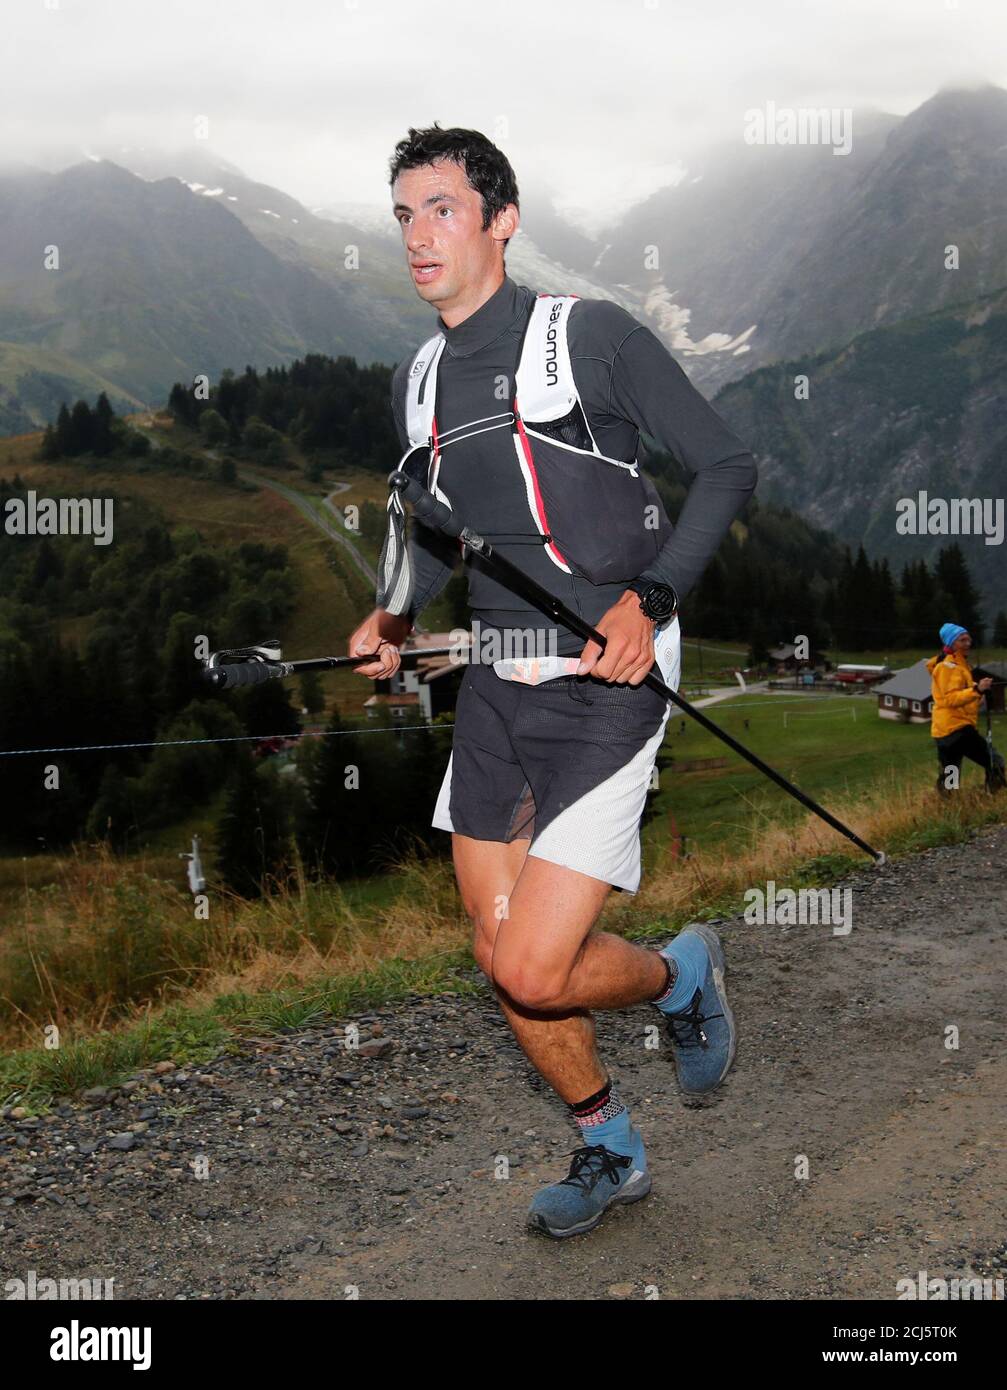 Kilian Jornet de España se ejecuta en el Col de Voza durante la 16ª  Ultra-Trail du Mont-Blanc (UTMB) carrera cerca de Chamonix, Francia 31 de  agosto de 2018. REUTERS/Denis Balibouse Fotografía de